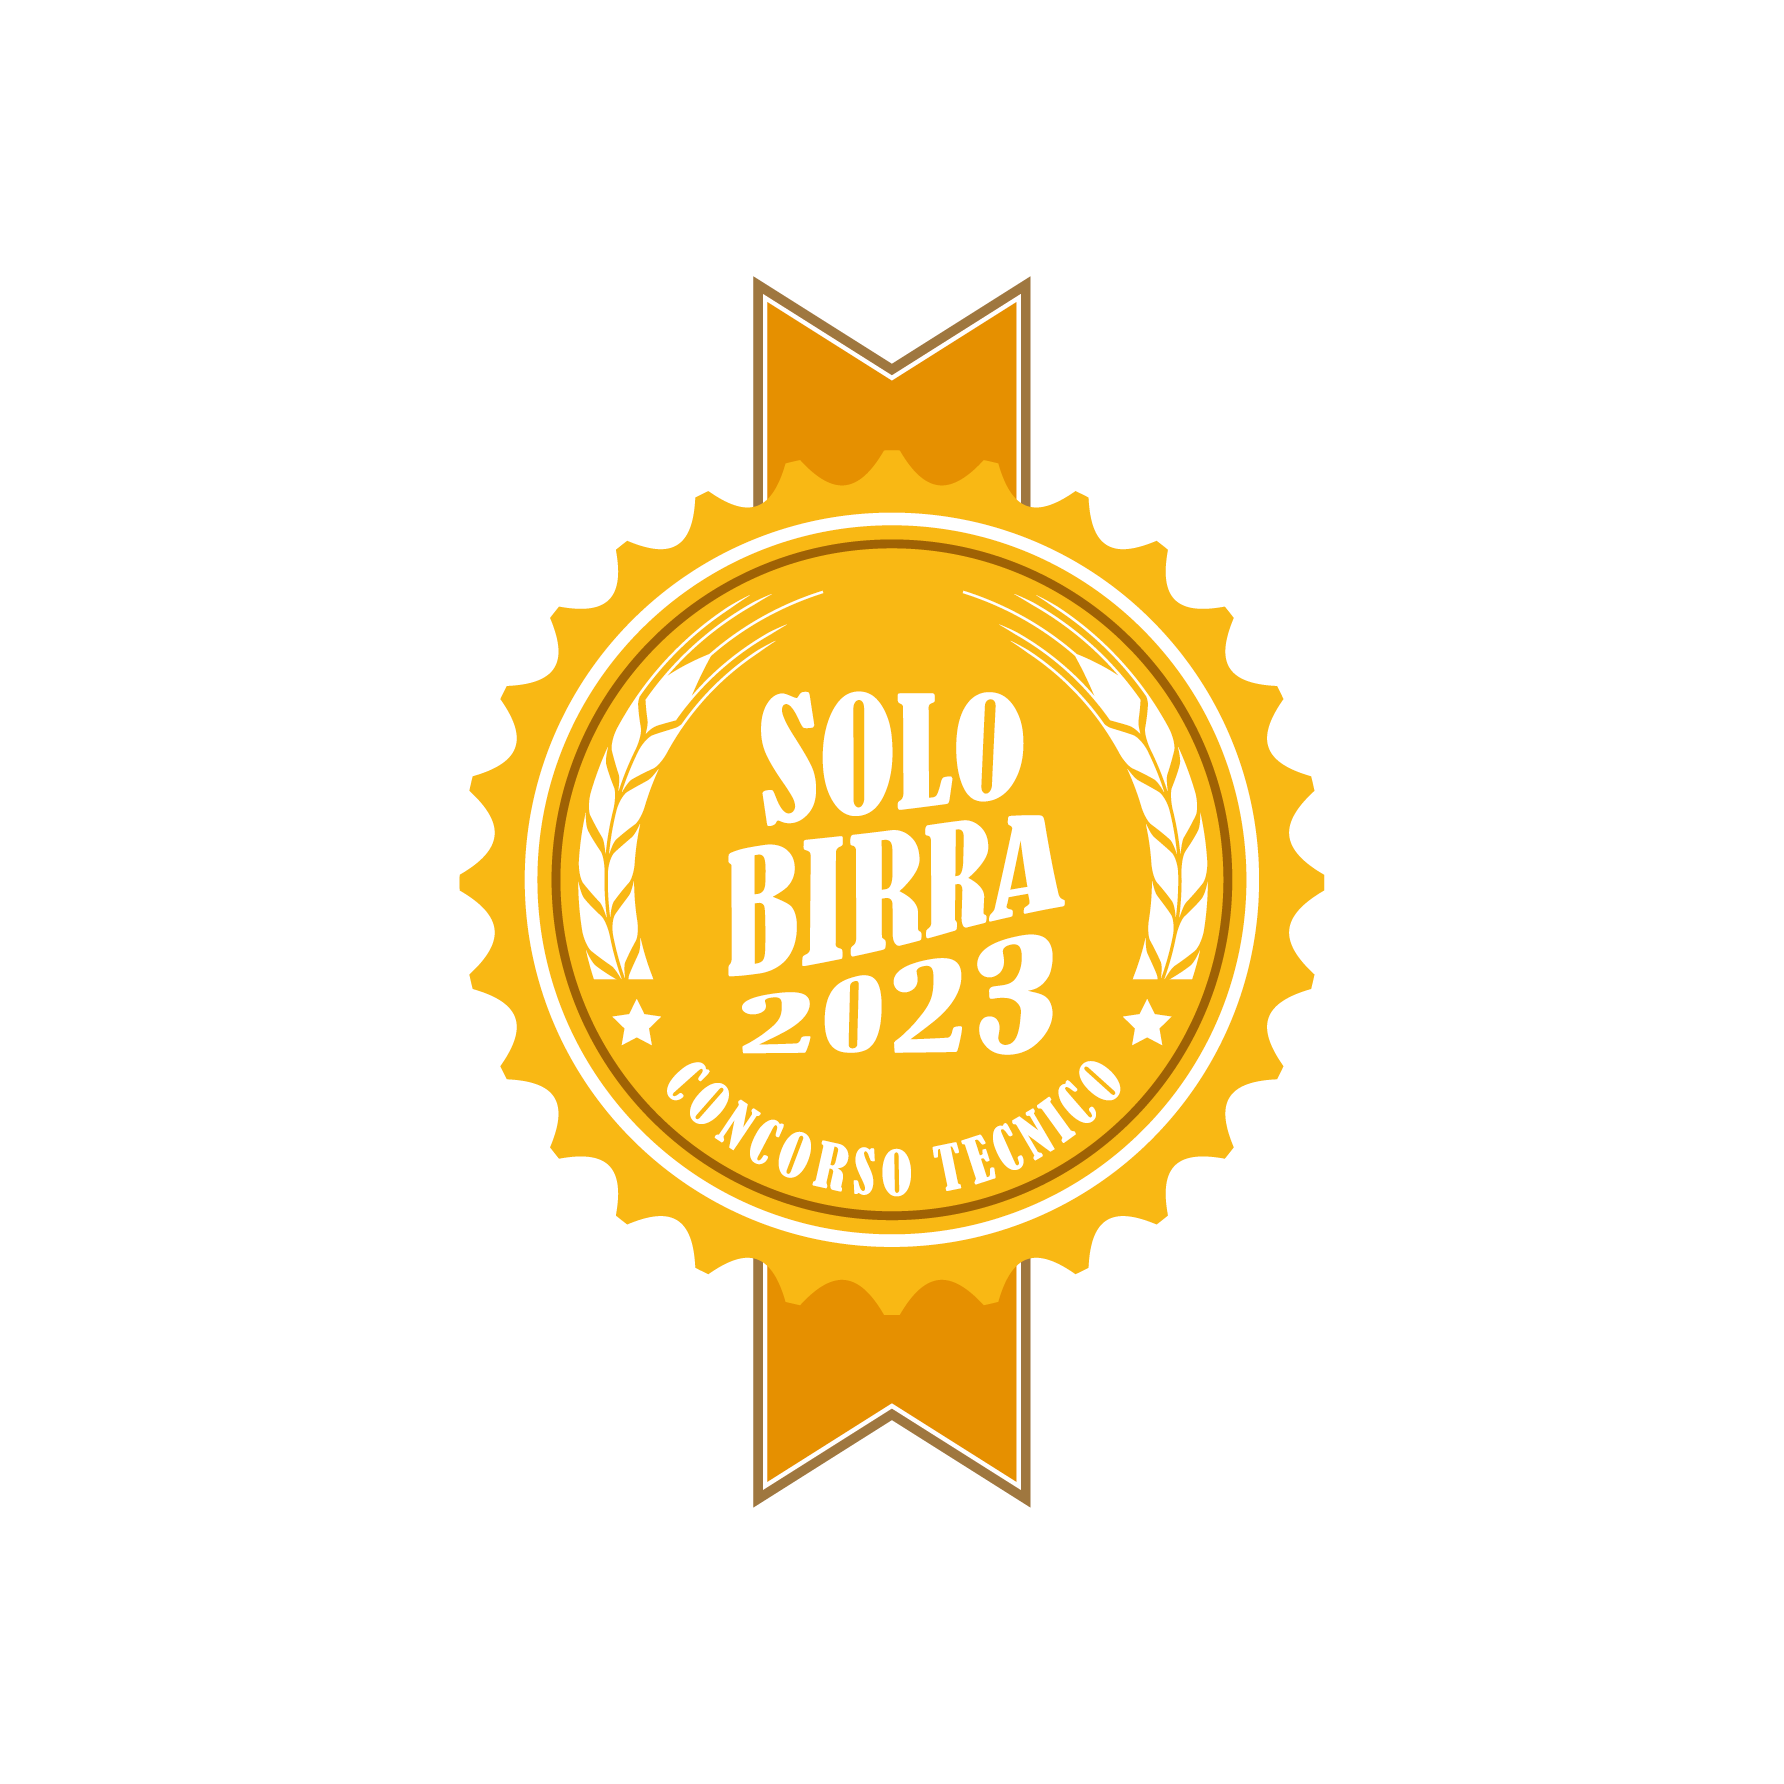 Ancora pochi giorni per iscriversi ai contest brassicoli  Solobirra 2023 e Best Label 2023!